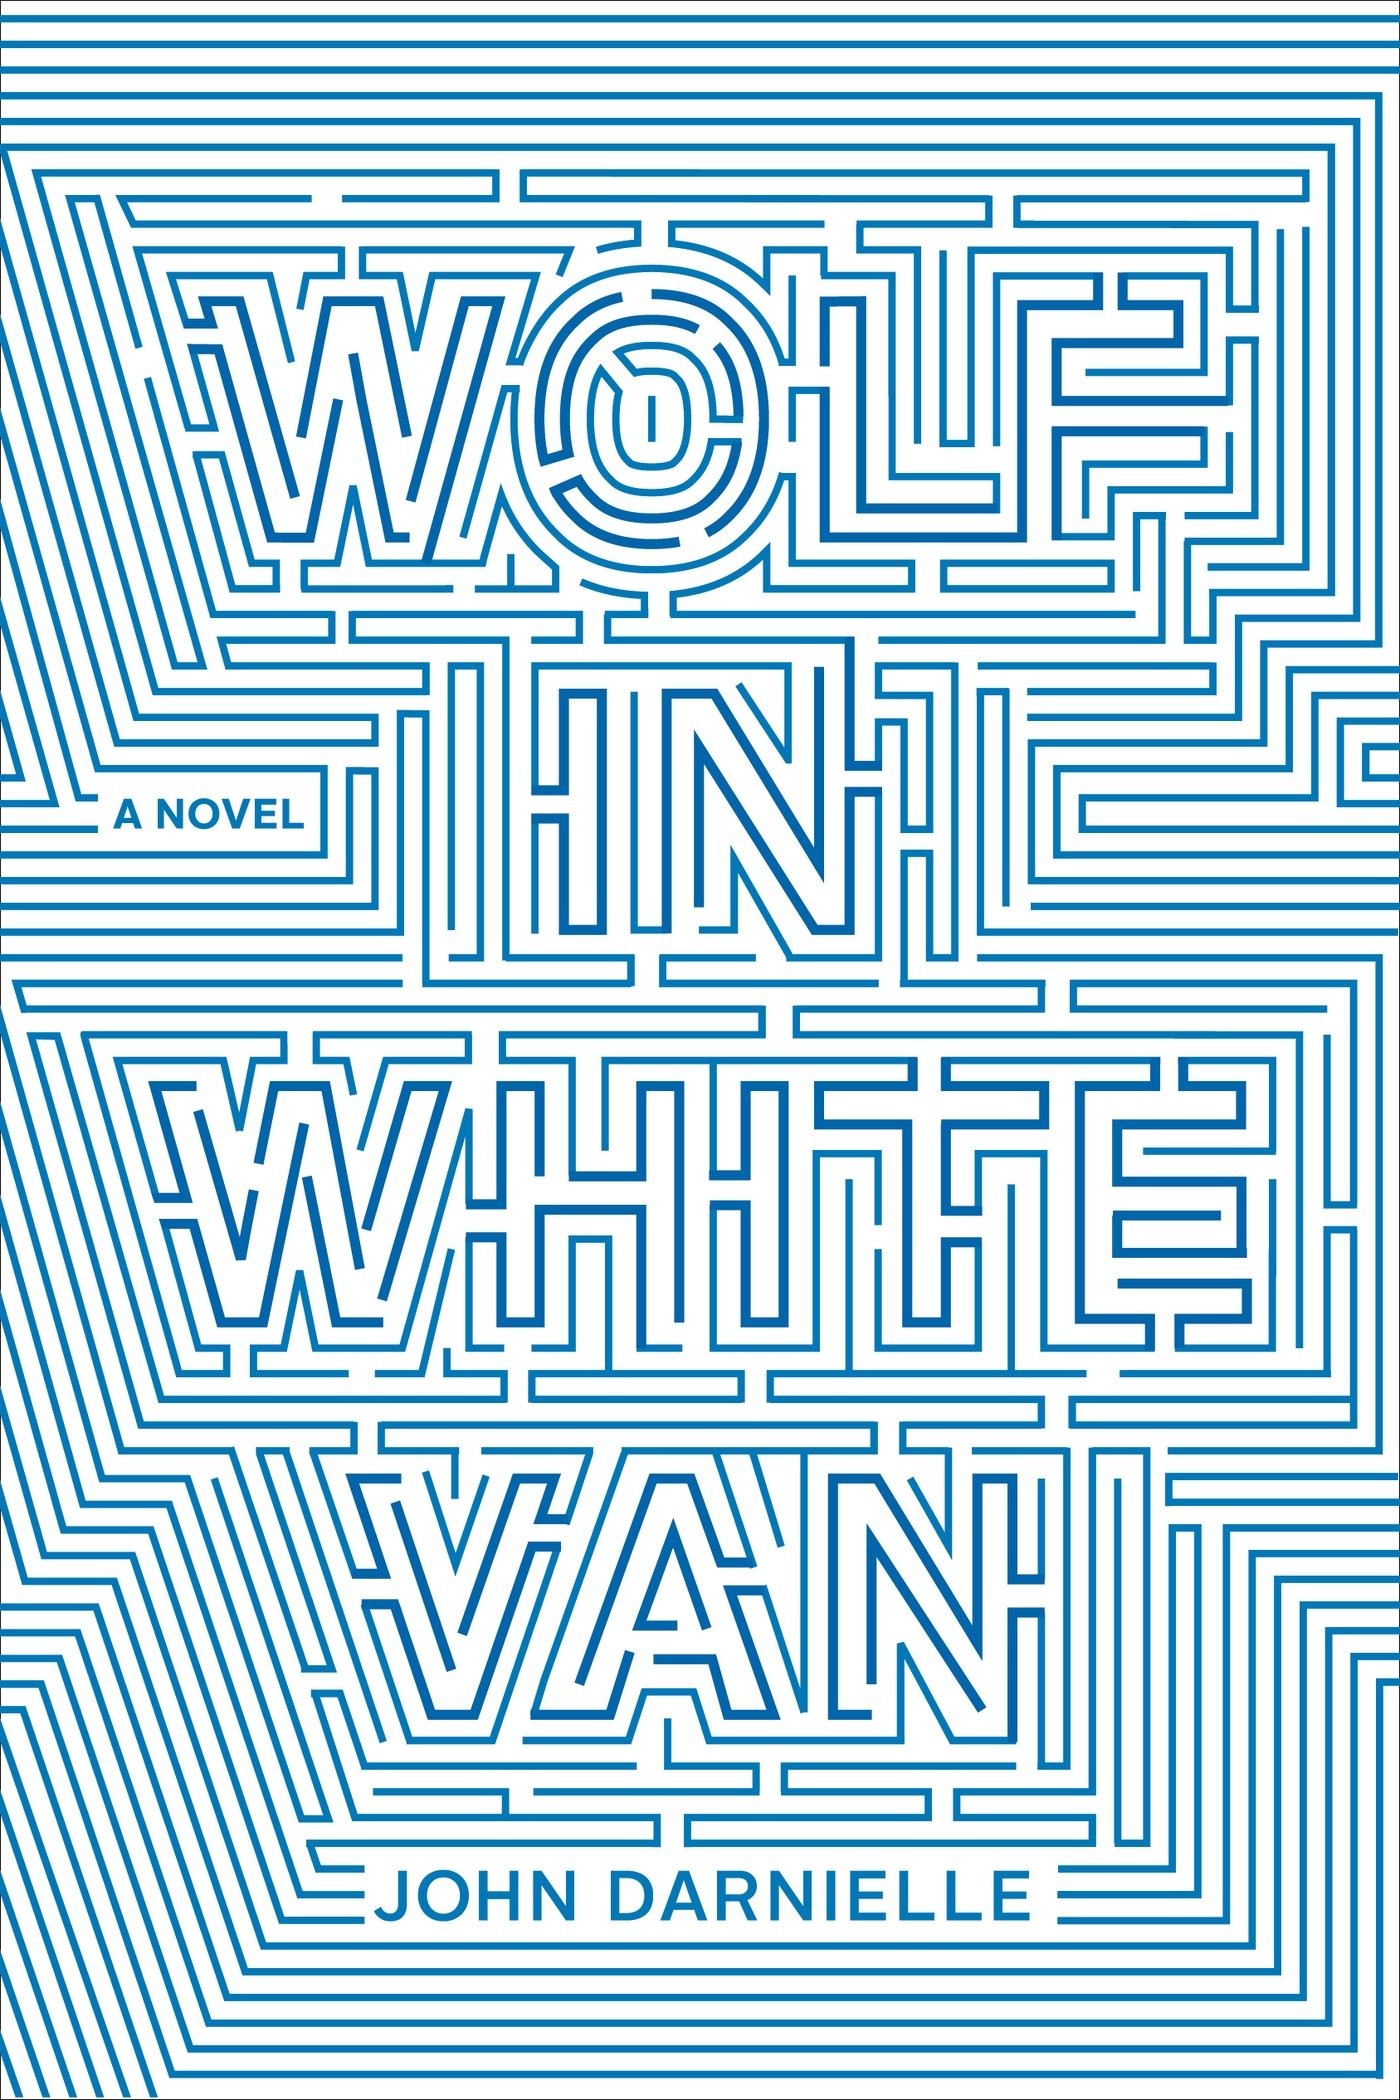 'Wolf in White Van'